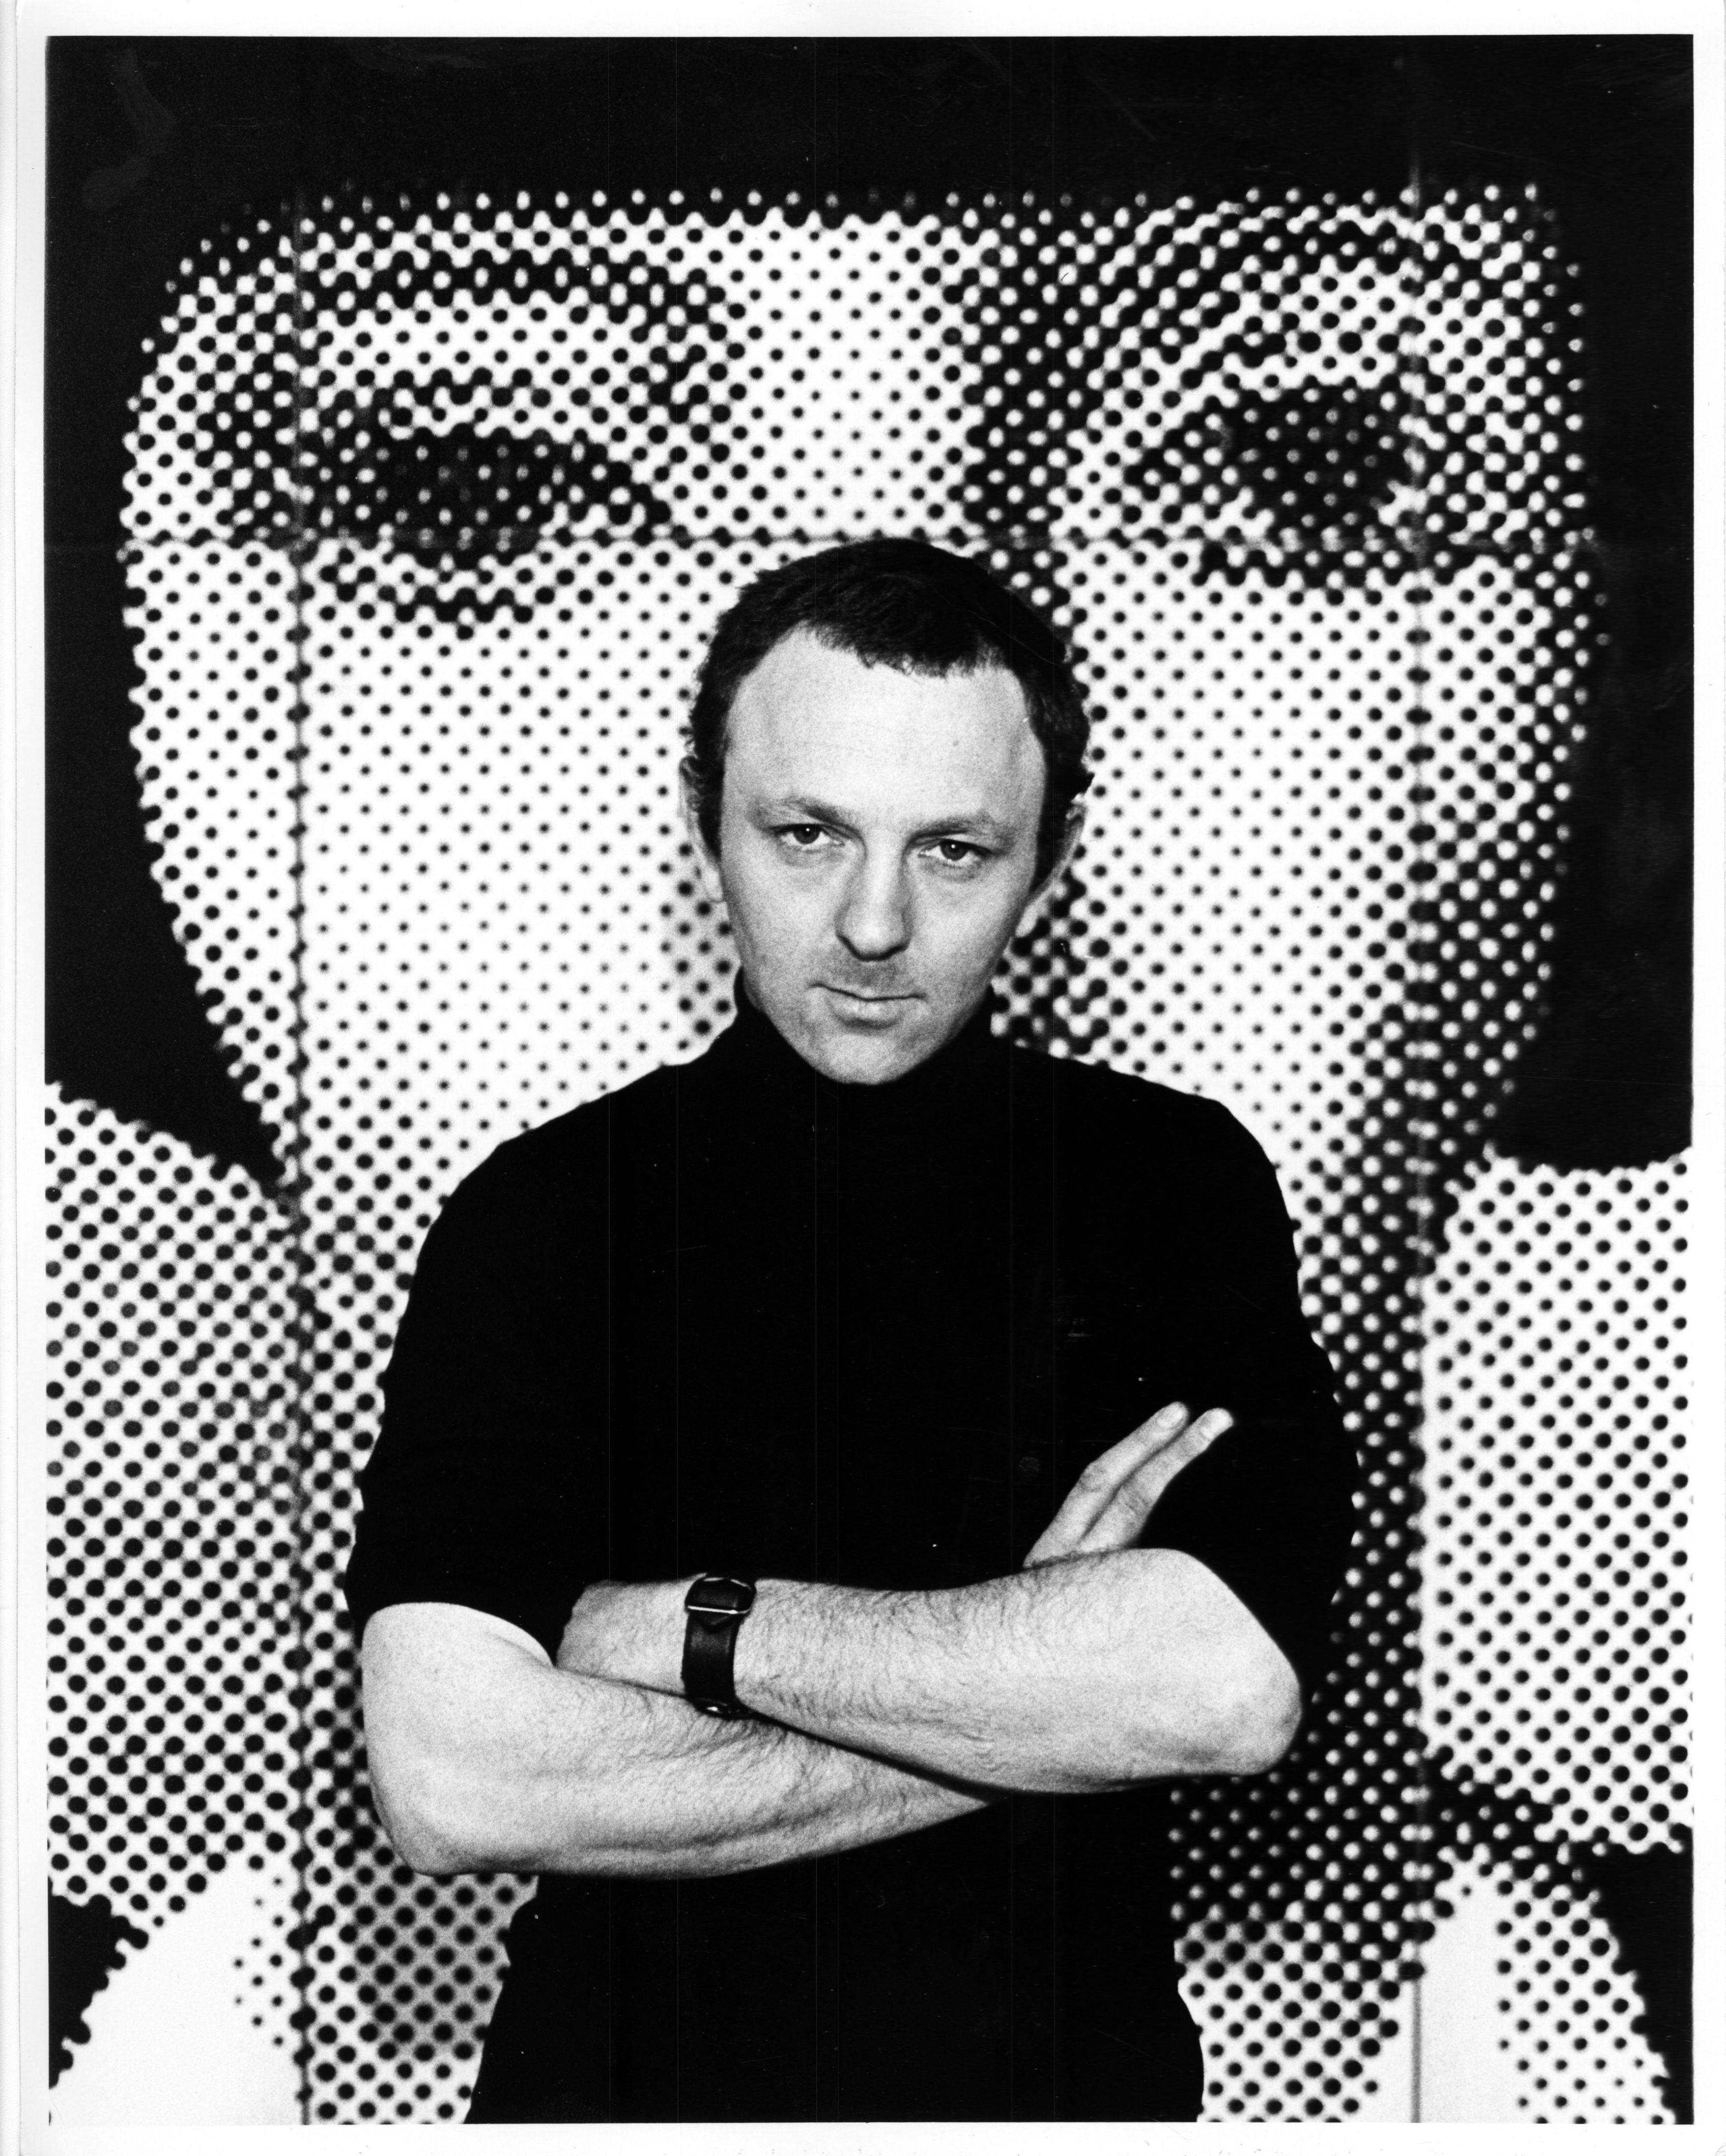 L'artiste pop et sculpteur britannique Gerald Laing dans son atelier le 30 octobre 1968. Vieille photographie d'exposition à la gélatine d'argent réalisée par Jack Mitchell. Signé au dos par Jack Mitchell.

Le photographe américain Jack Mitchell